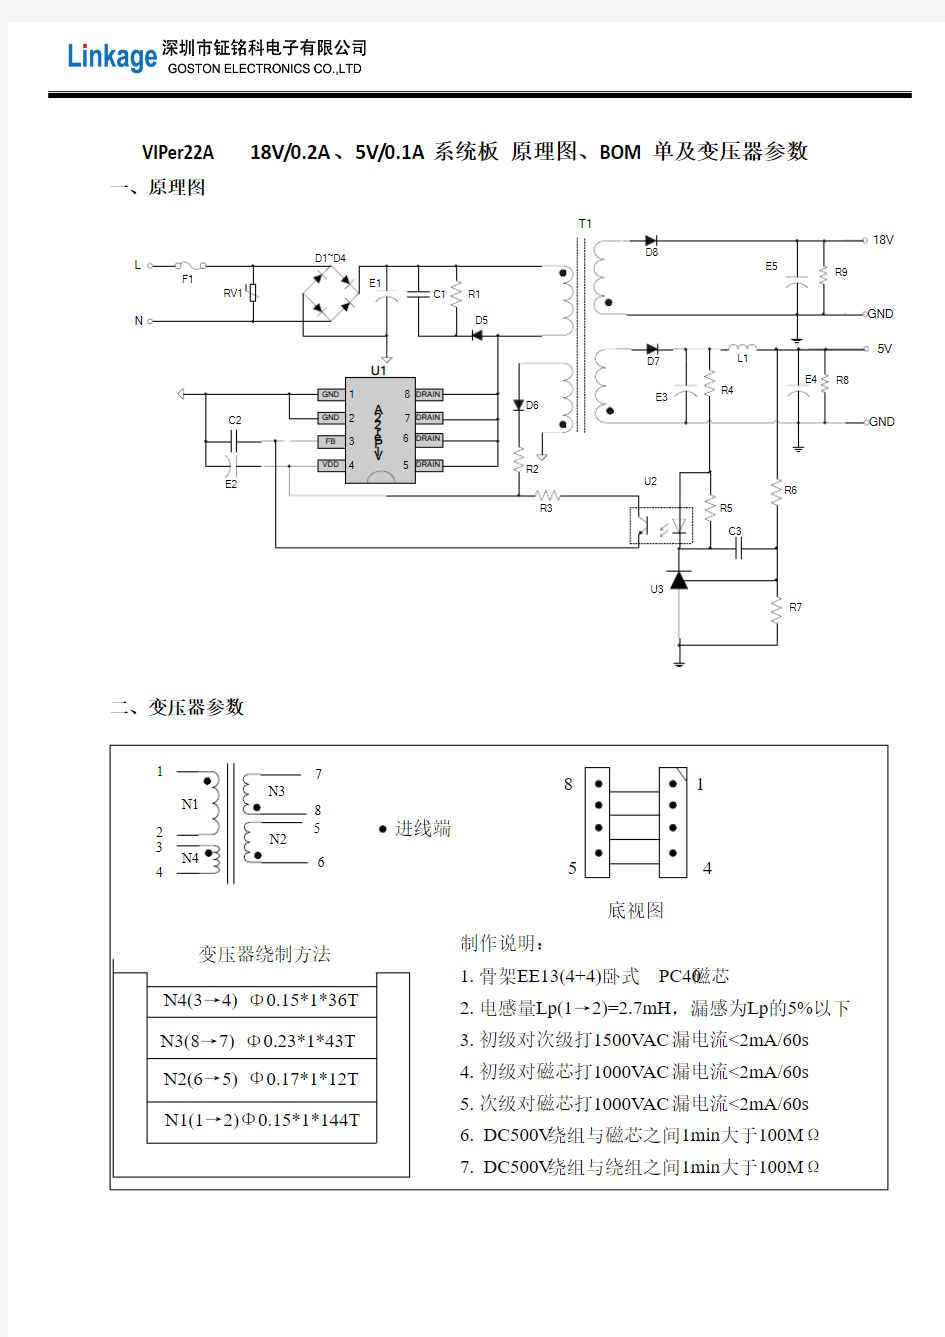 VIPer22A 18V0.2A、5V0.1A小功率无线充电器IC方案BOM、原理图和变压器参数(两路输出)